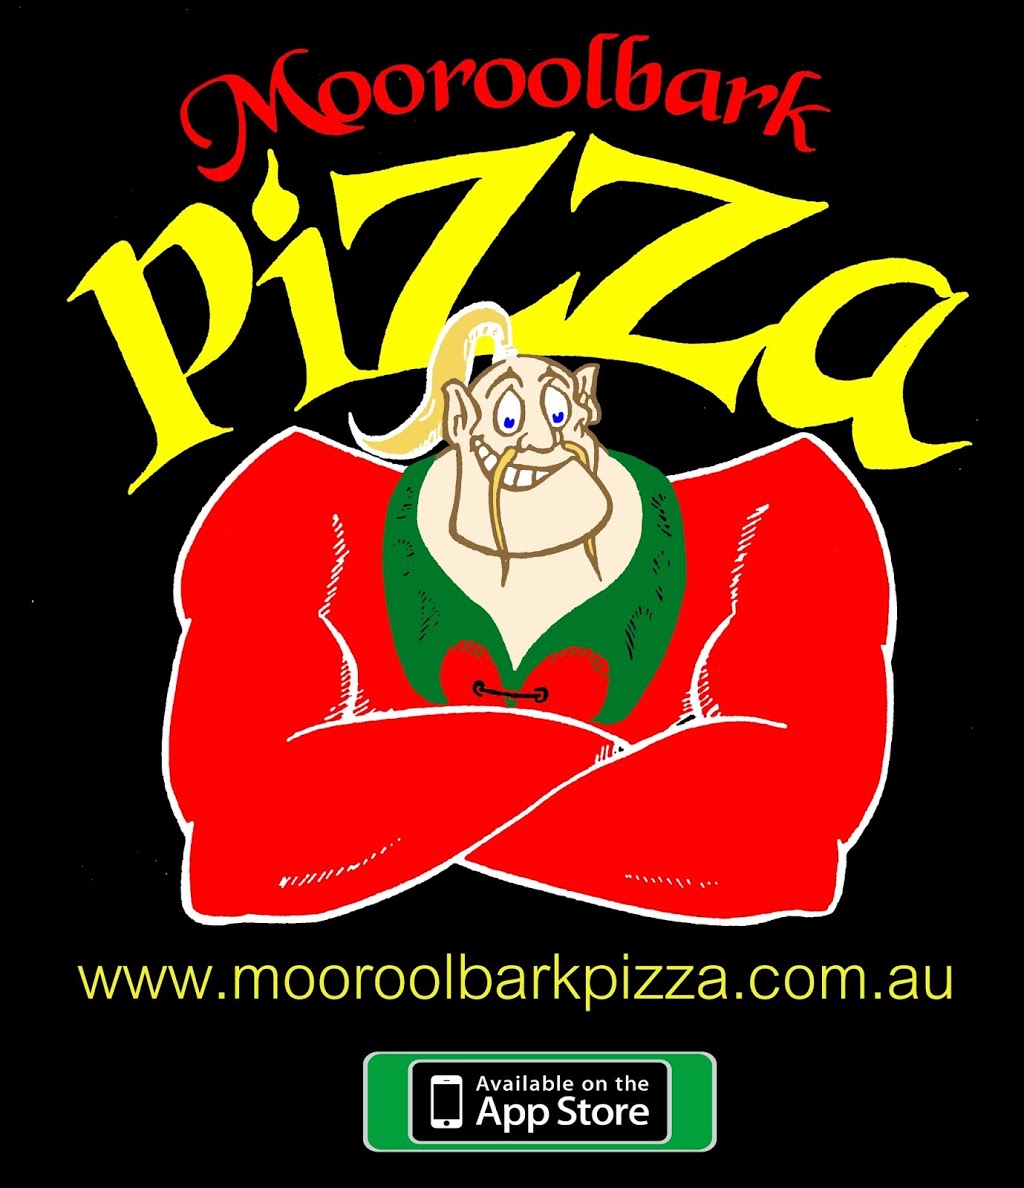 Mooroolbark Pizza | 41 Manchester Rd, Mooroolbark VIC 3138, Australia | Phone: (03) 9726 7583